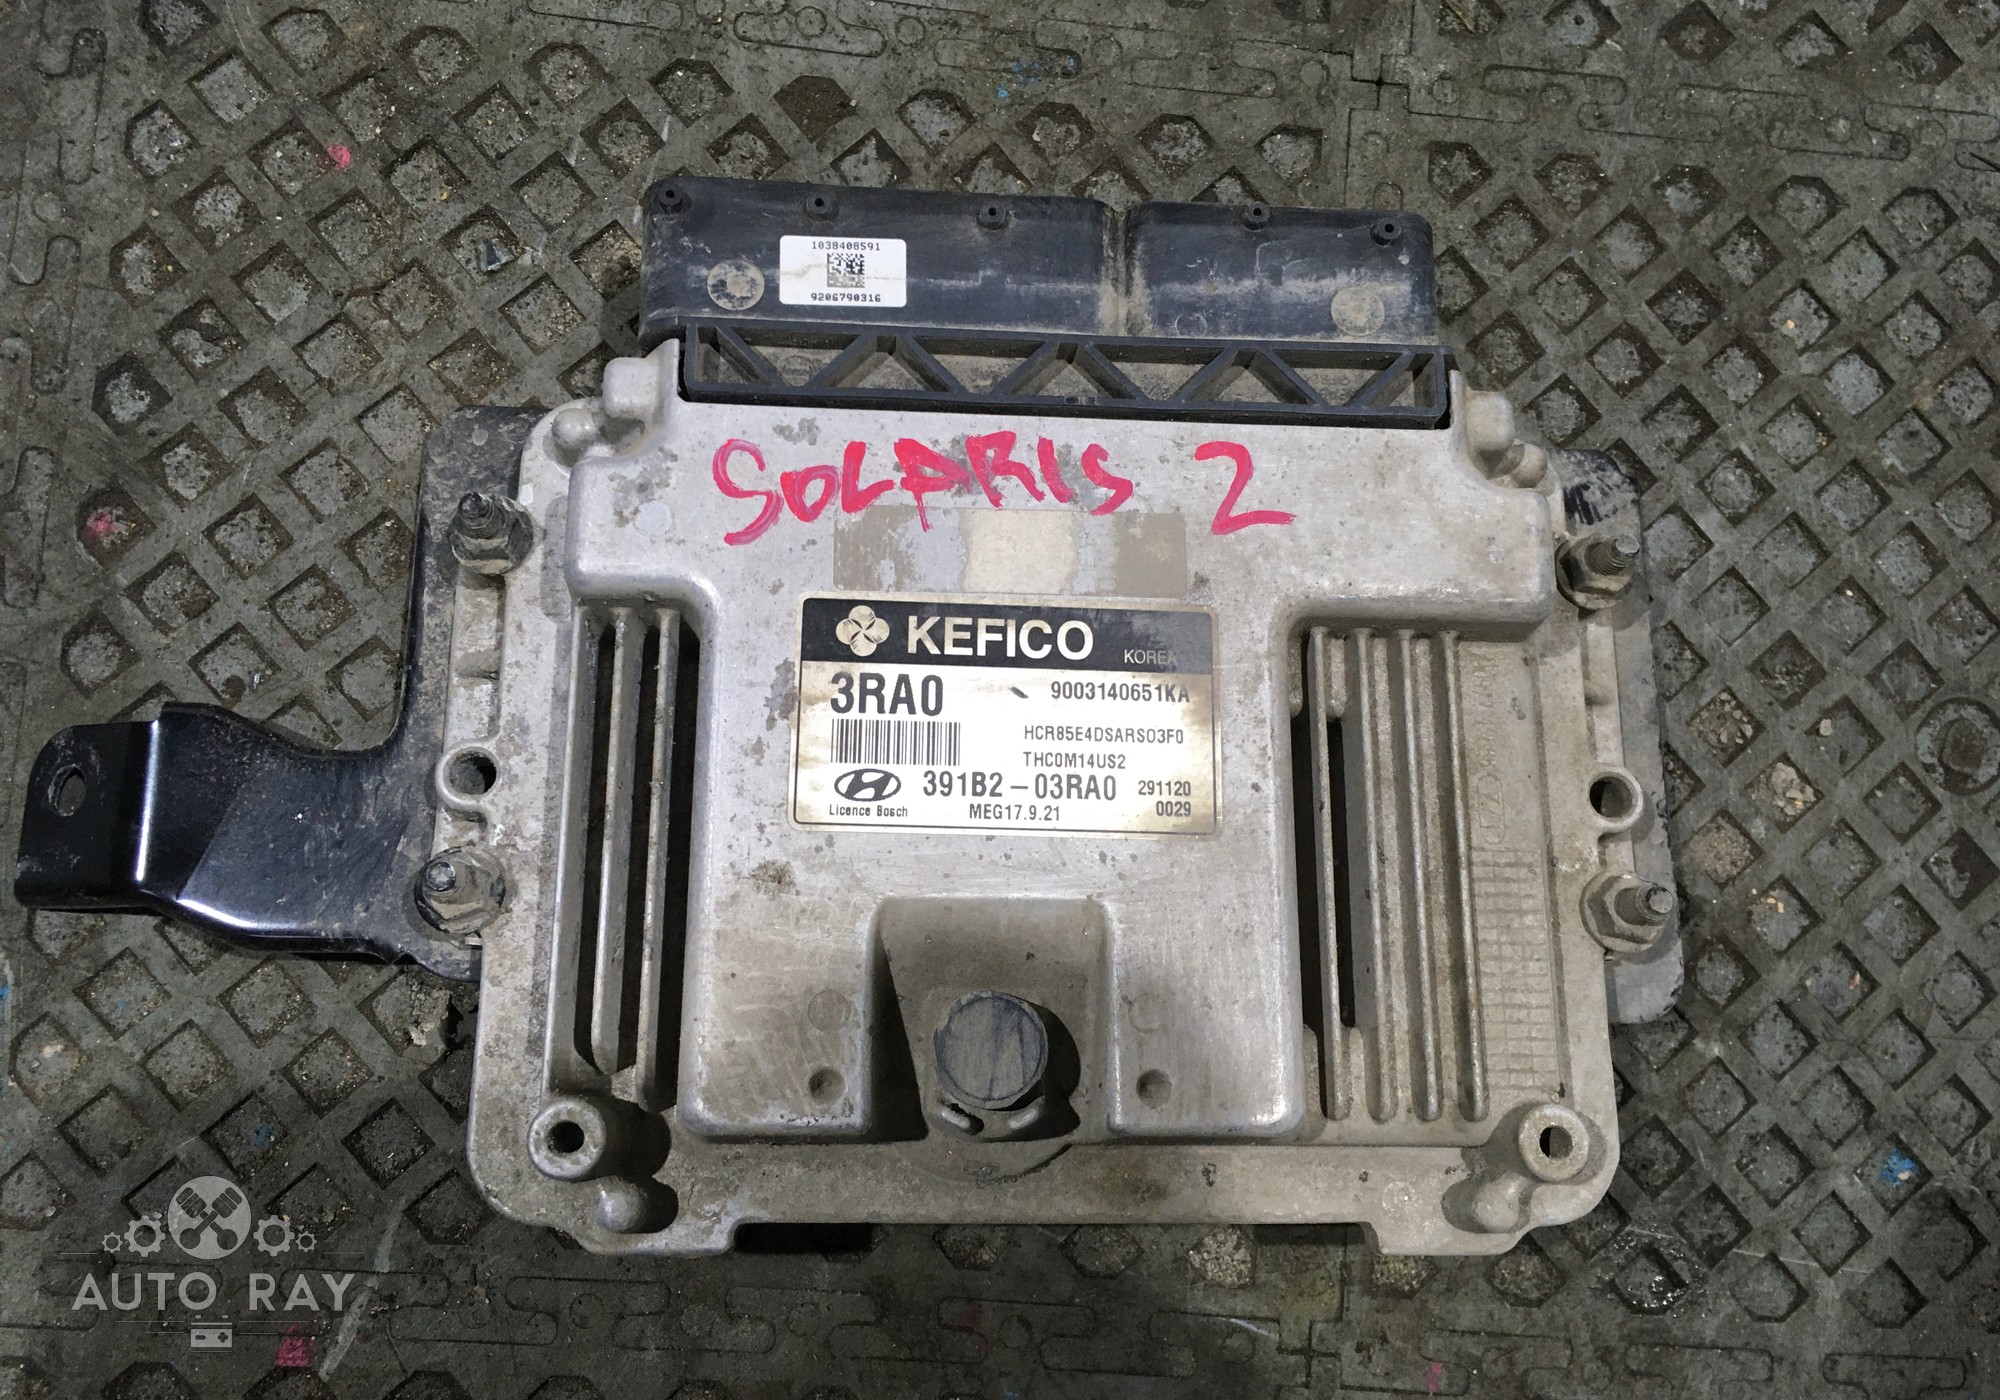 391B203RA0 Блок управления двигателем для Hyundai Solaris II (с 2017)